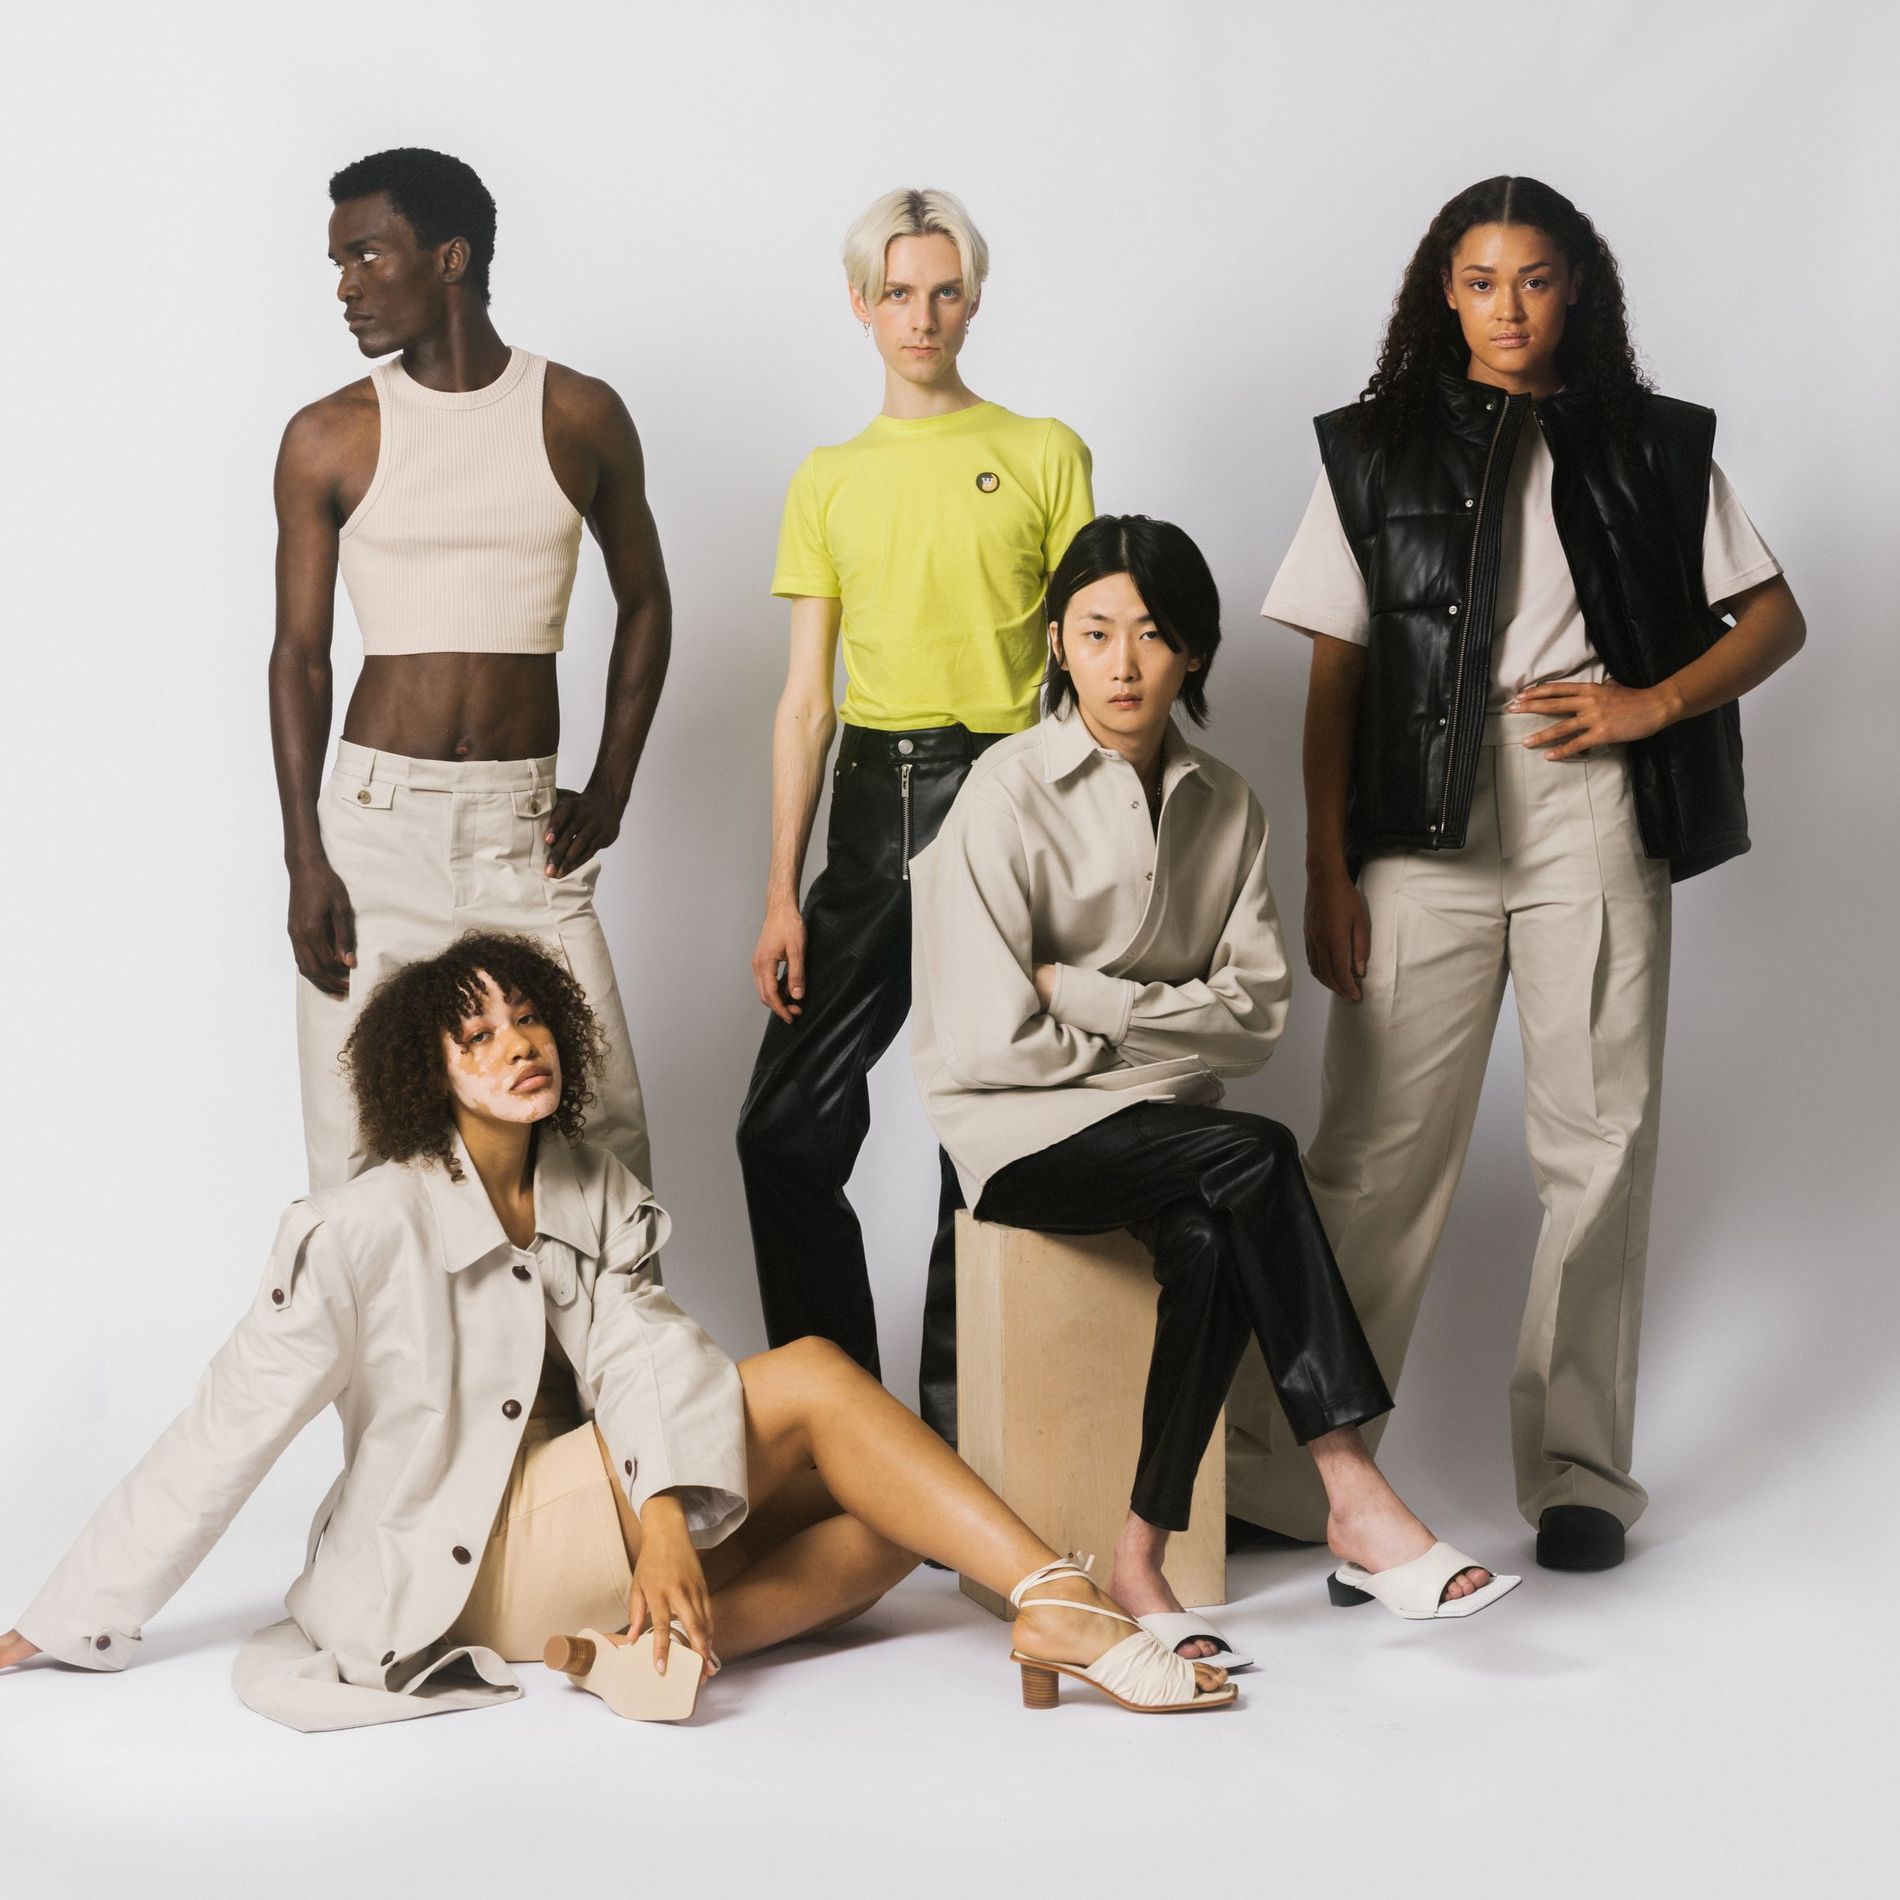 Zalando debuts new inclusive capsule collection “Limitless fashion